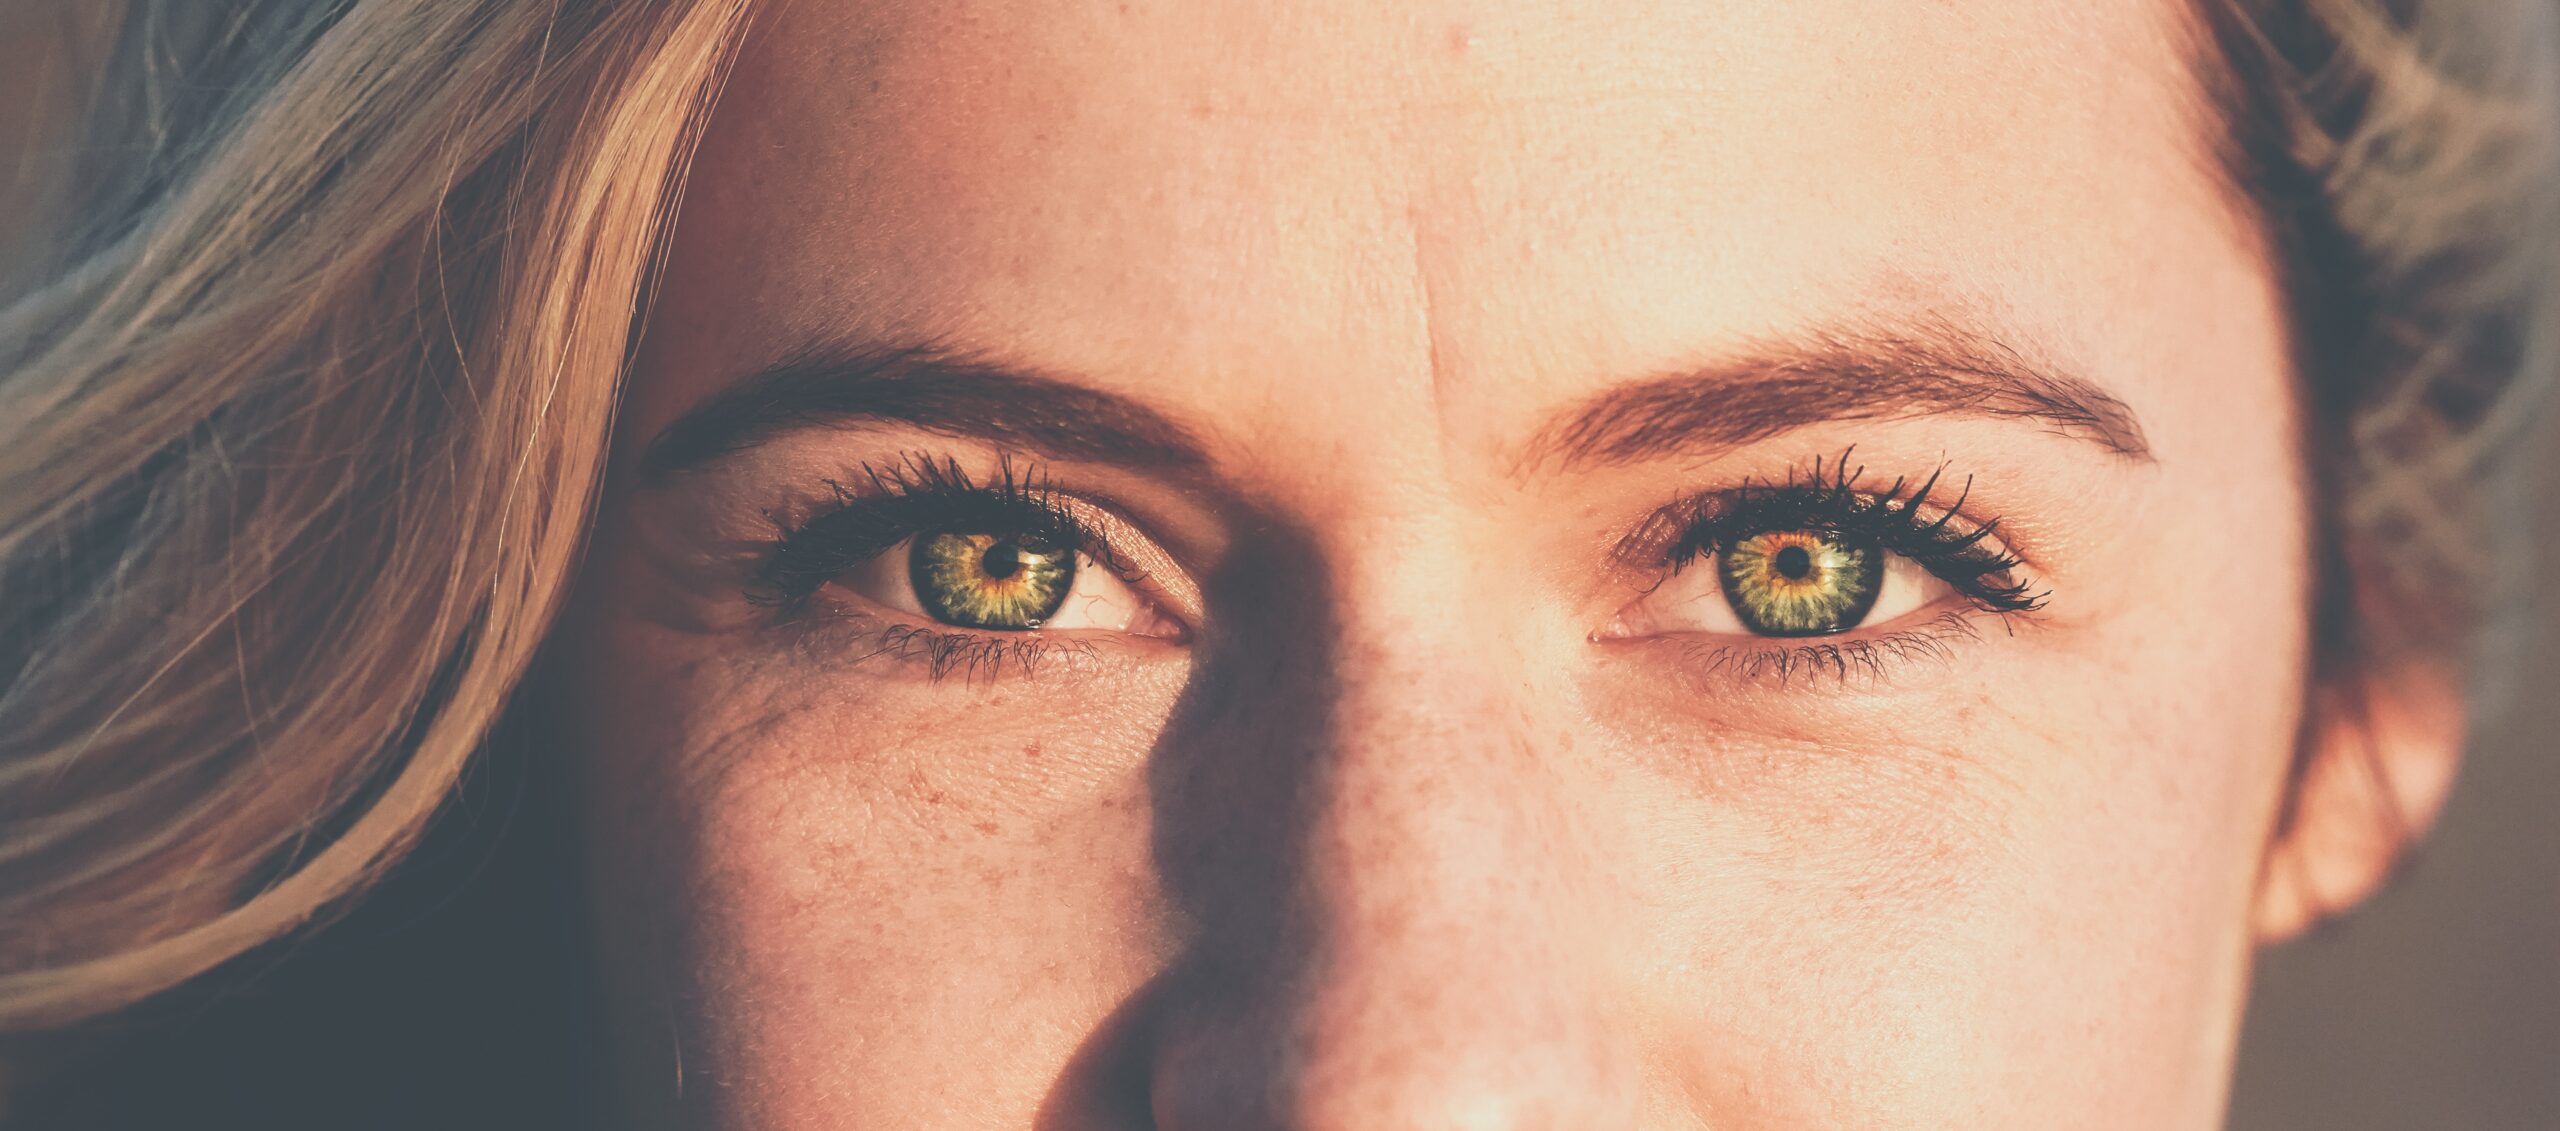 İnsan Göz Renginin Genetiği Önceden Düşünülenden Çok Daha Karmaşık